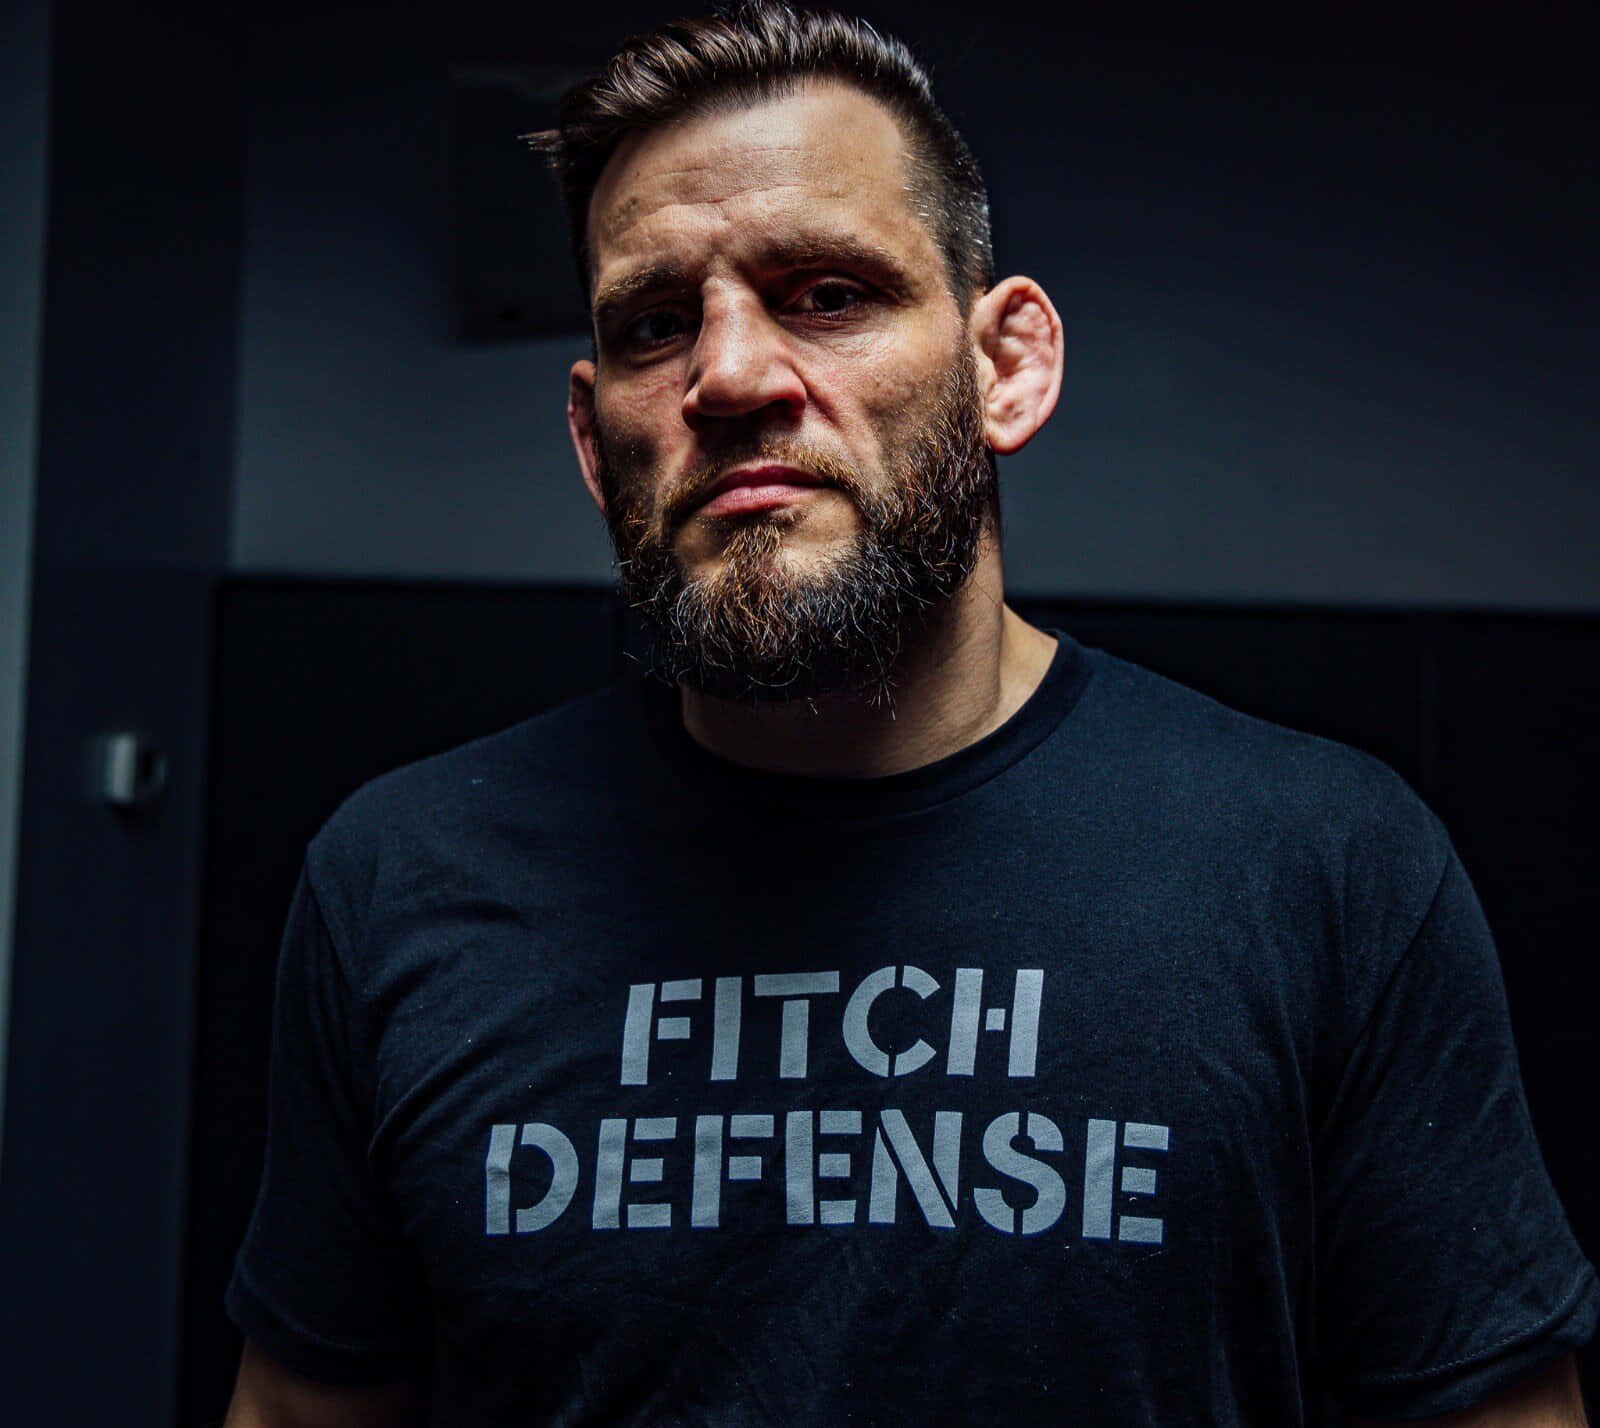 Jon Fitch Self-Defense Coach Wallpaper